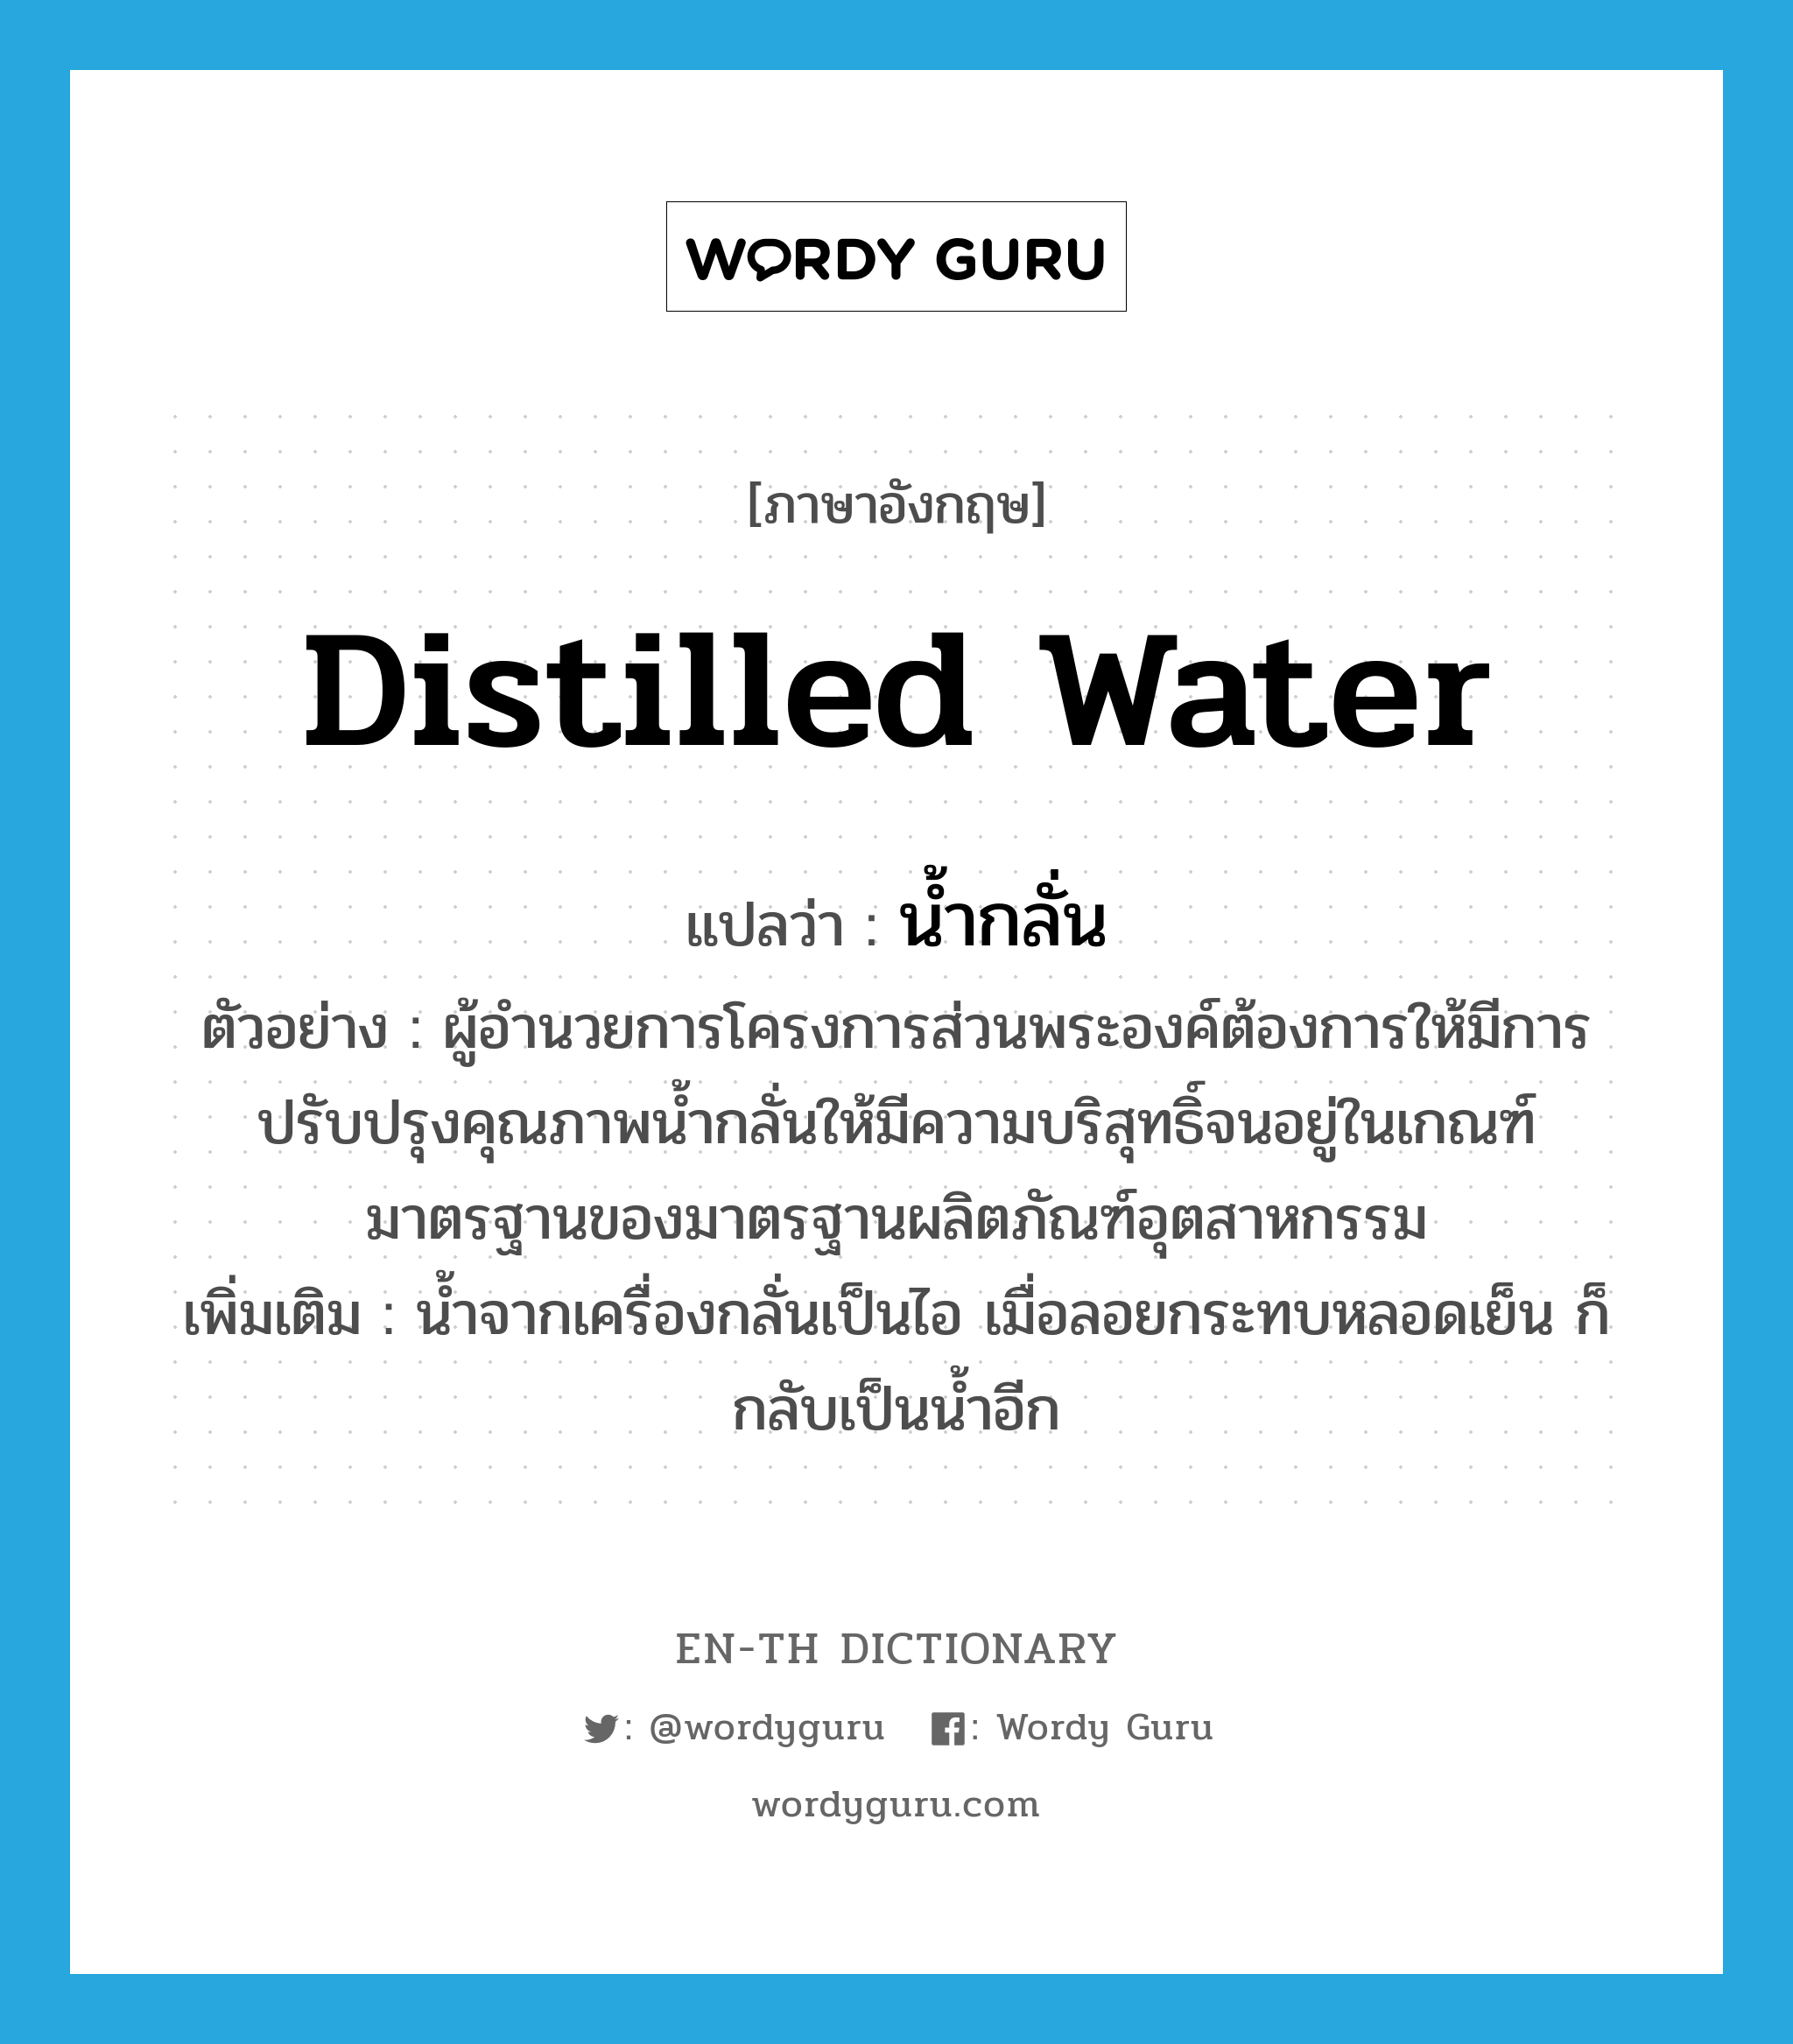 น้ำกลั่น ภาษาอังกฤษ?, คำศัพท์ภาษาอังกฤษ น้ำกลั่น แปลว่า distilled water ประเภท N ตัวอย่าง ผู้อำนวยการโครงการส่วนพระองค์ต้องการให้มีการปรับปรุงคุณภาพน้ำกลั่นให้มีความบริสุทธิ์จนอยู่ในเกณฑ์มาตรฐานของมาตรฐานผลิตภัณฑ์อุตสาหกรรม เพิ่มเติม น้ำจากเครื่องกลั่นเป็นไอ เมื่อลอยกระทบหลอดเย็น ก็กลับเป็นน้ำอีก หมวด N